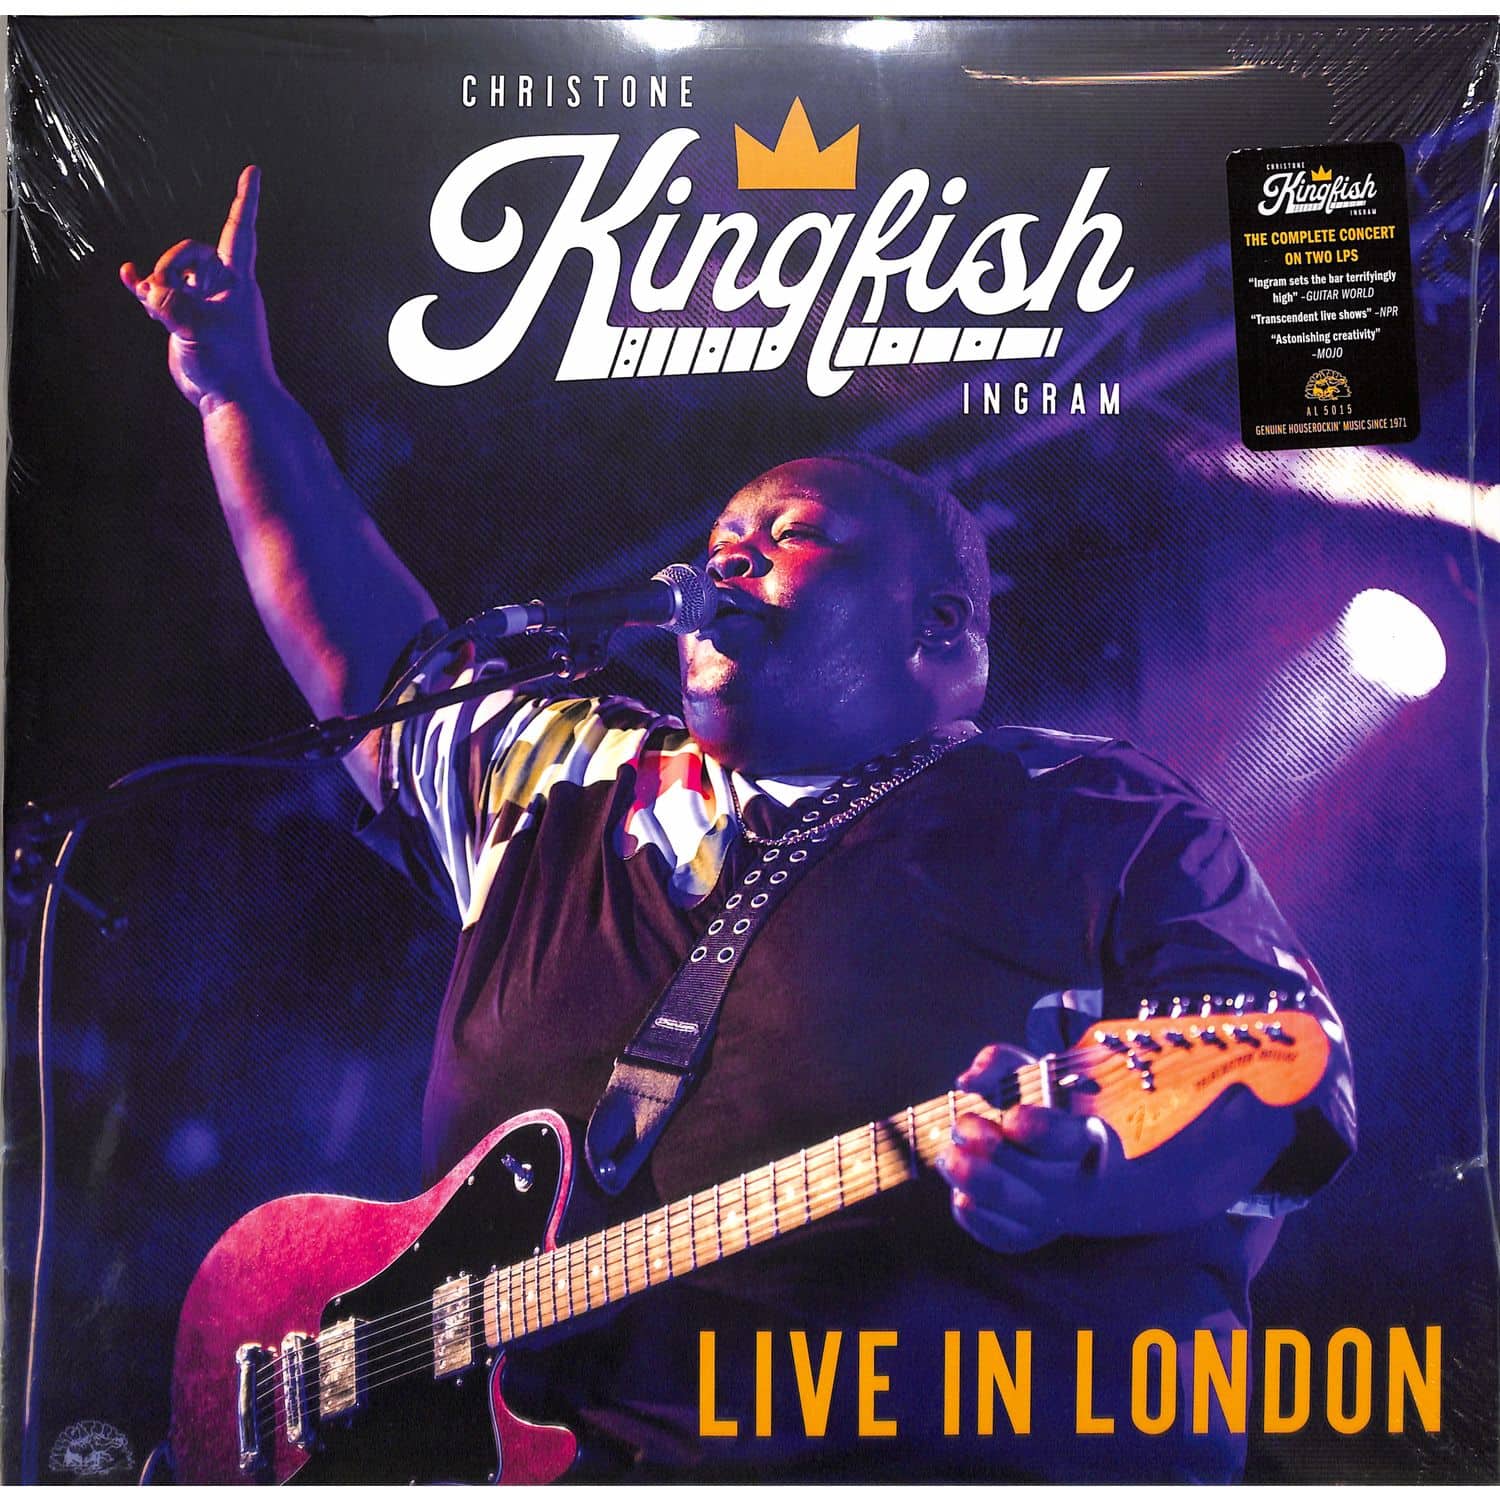 Christone -Kingfish- Ingram - LIVE IN LONDON 